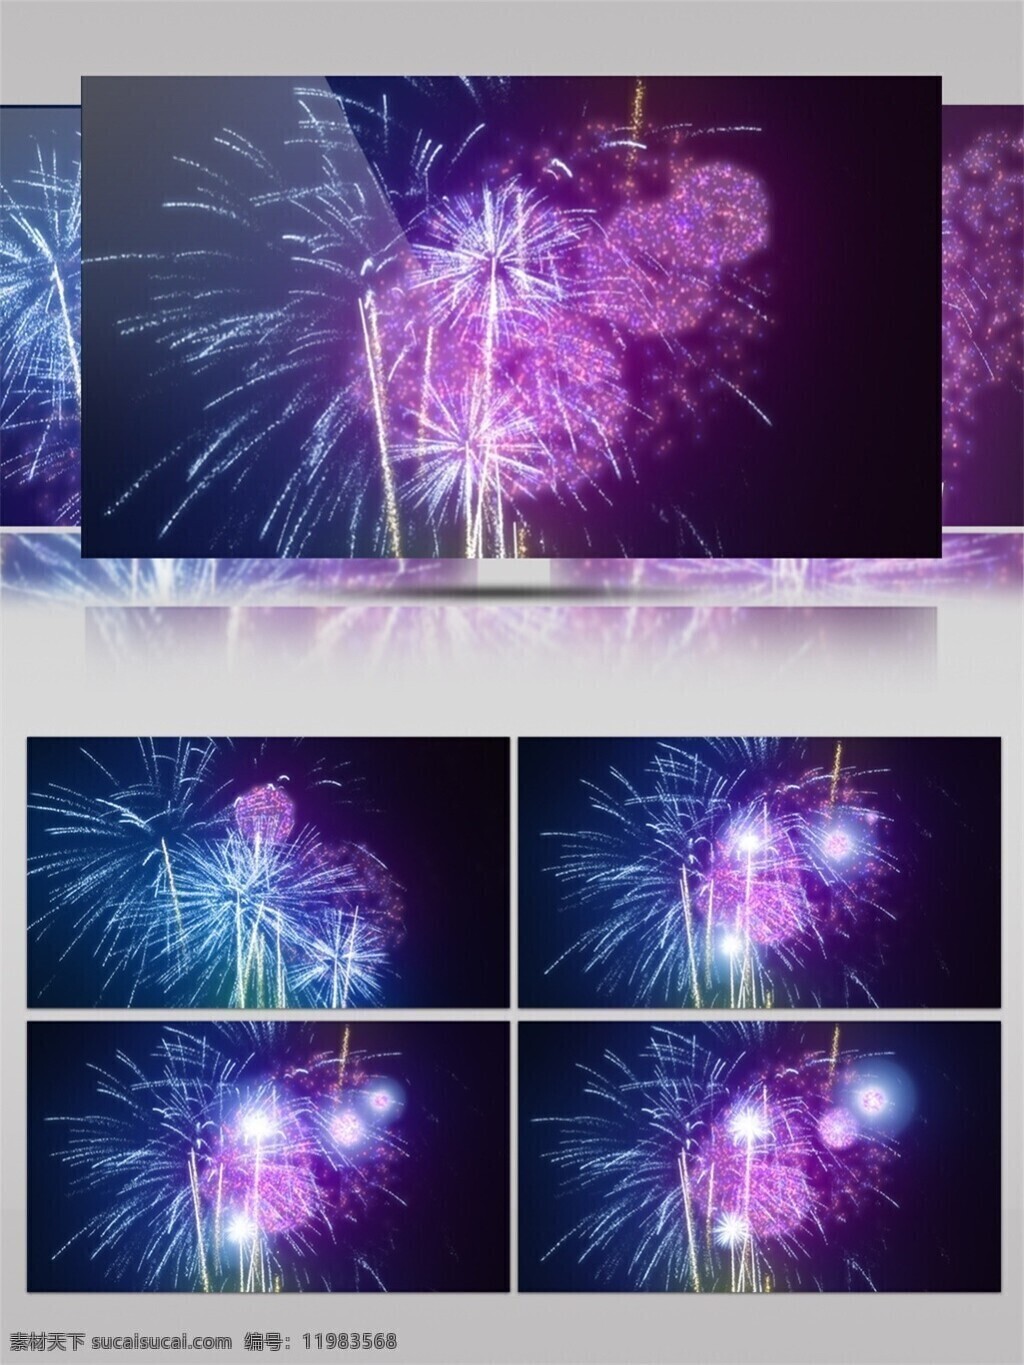 紫色 光束 烟花 动态 视频 节目灯光 蓝色 视觉享受 唯美背景素材